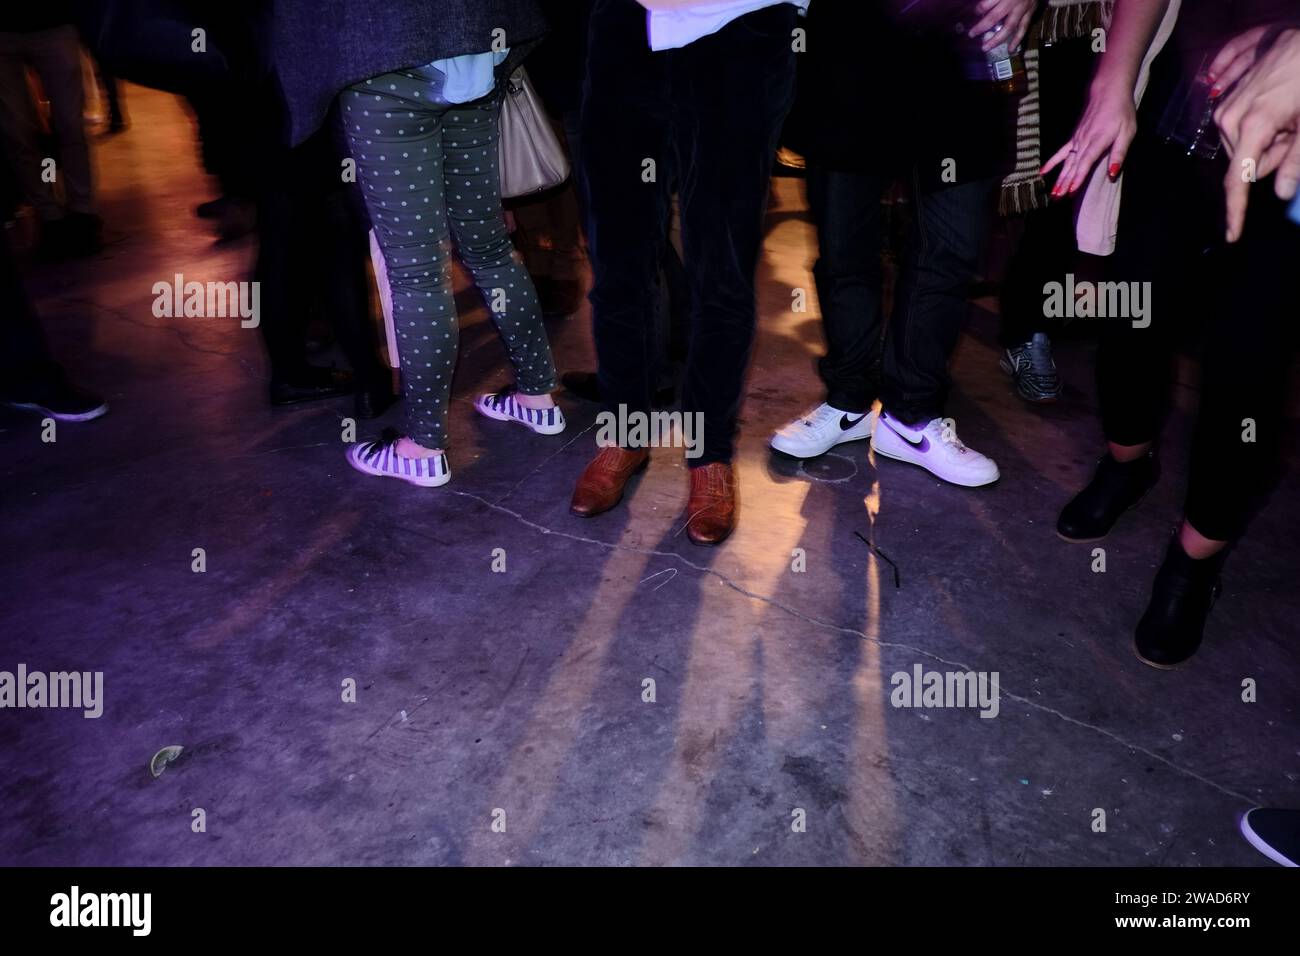 Beine, Schuhe, Läufer, Turnschuhe, Hände, Jeans, Hosen, buntes Licht und Schatten auf einer Lagerparty, Tanzfläche, Nachtleben in Sydney Stockfoto